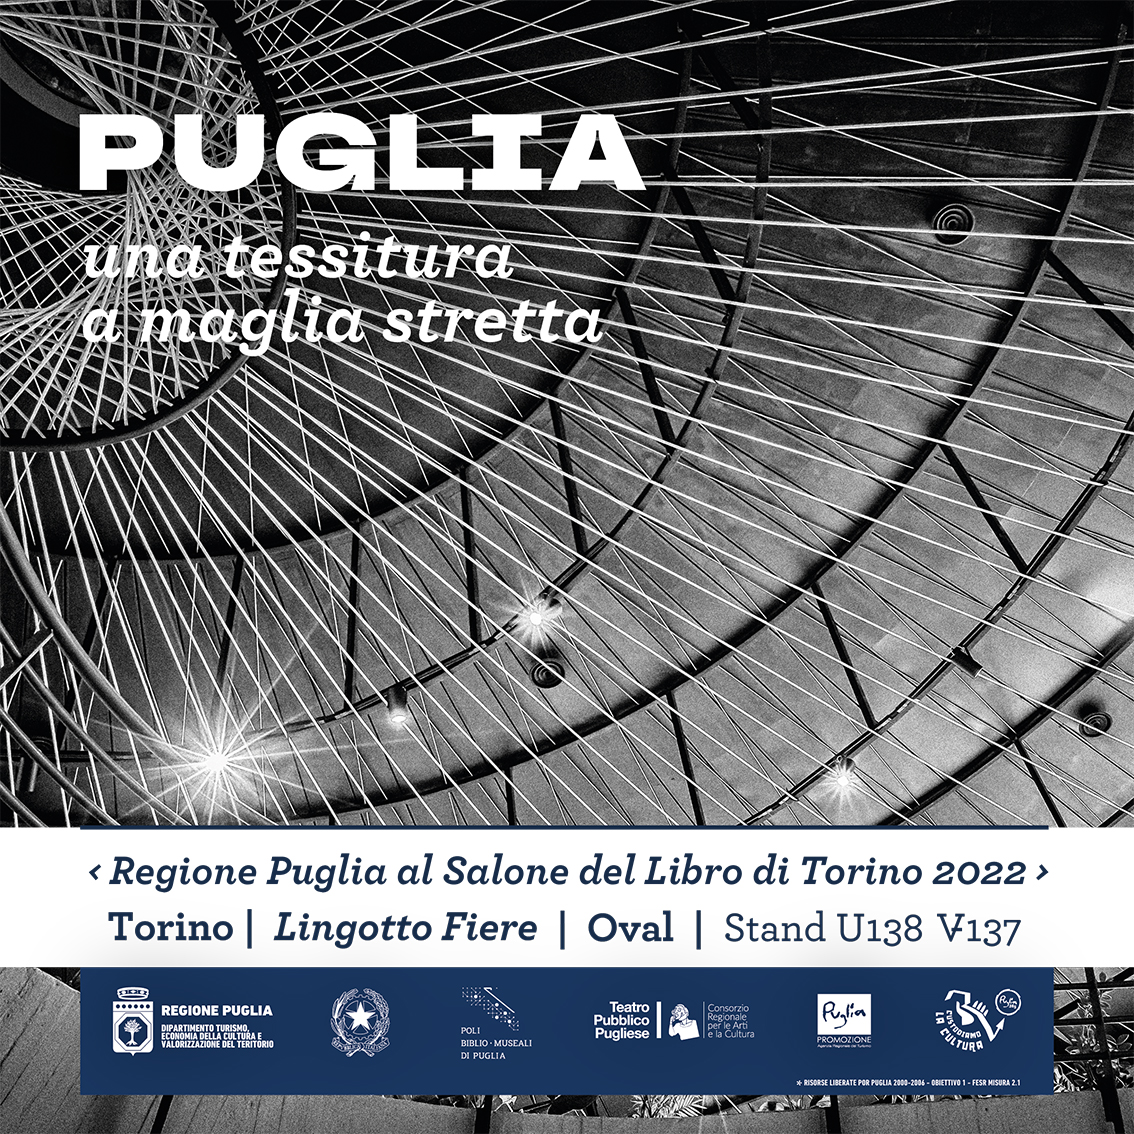 Regione Puglia: Salone del Libro di Torino dal 19 al 23 maggio 2022